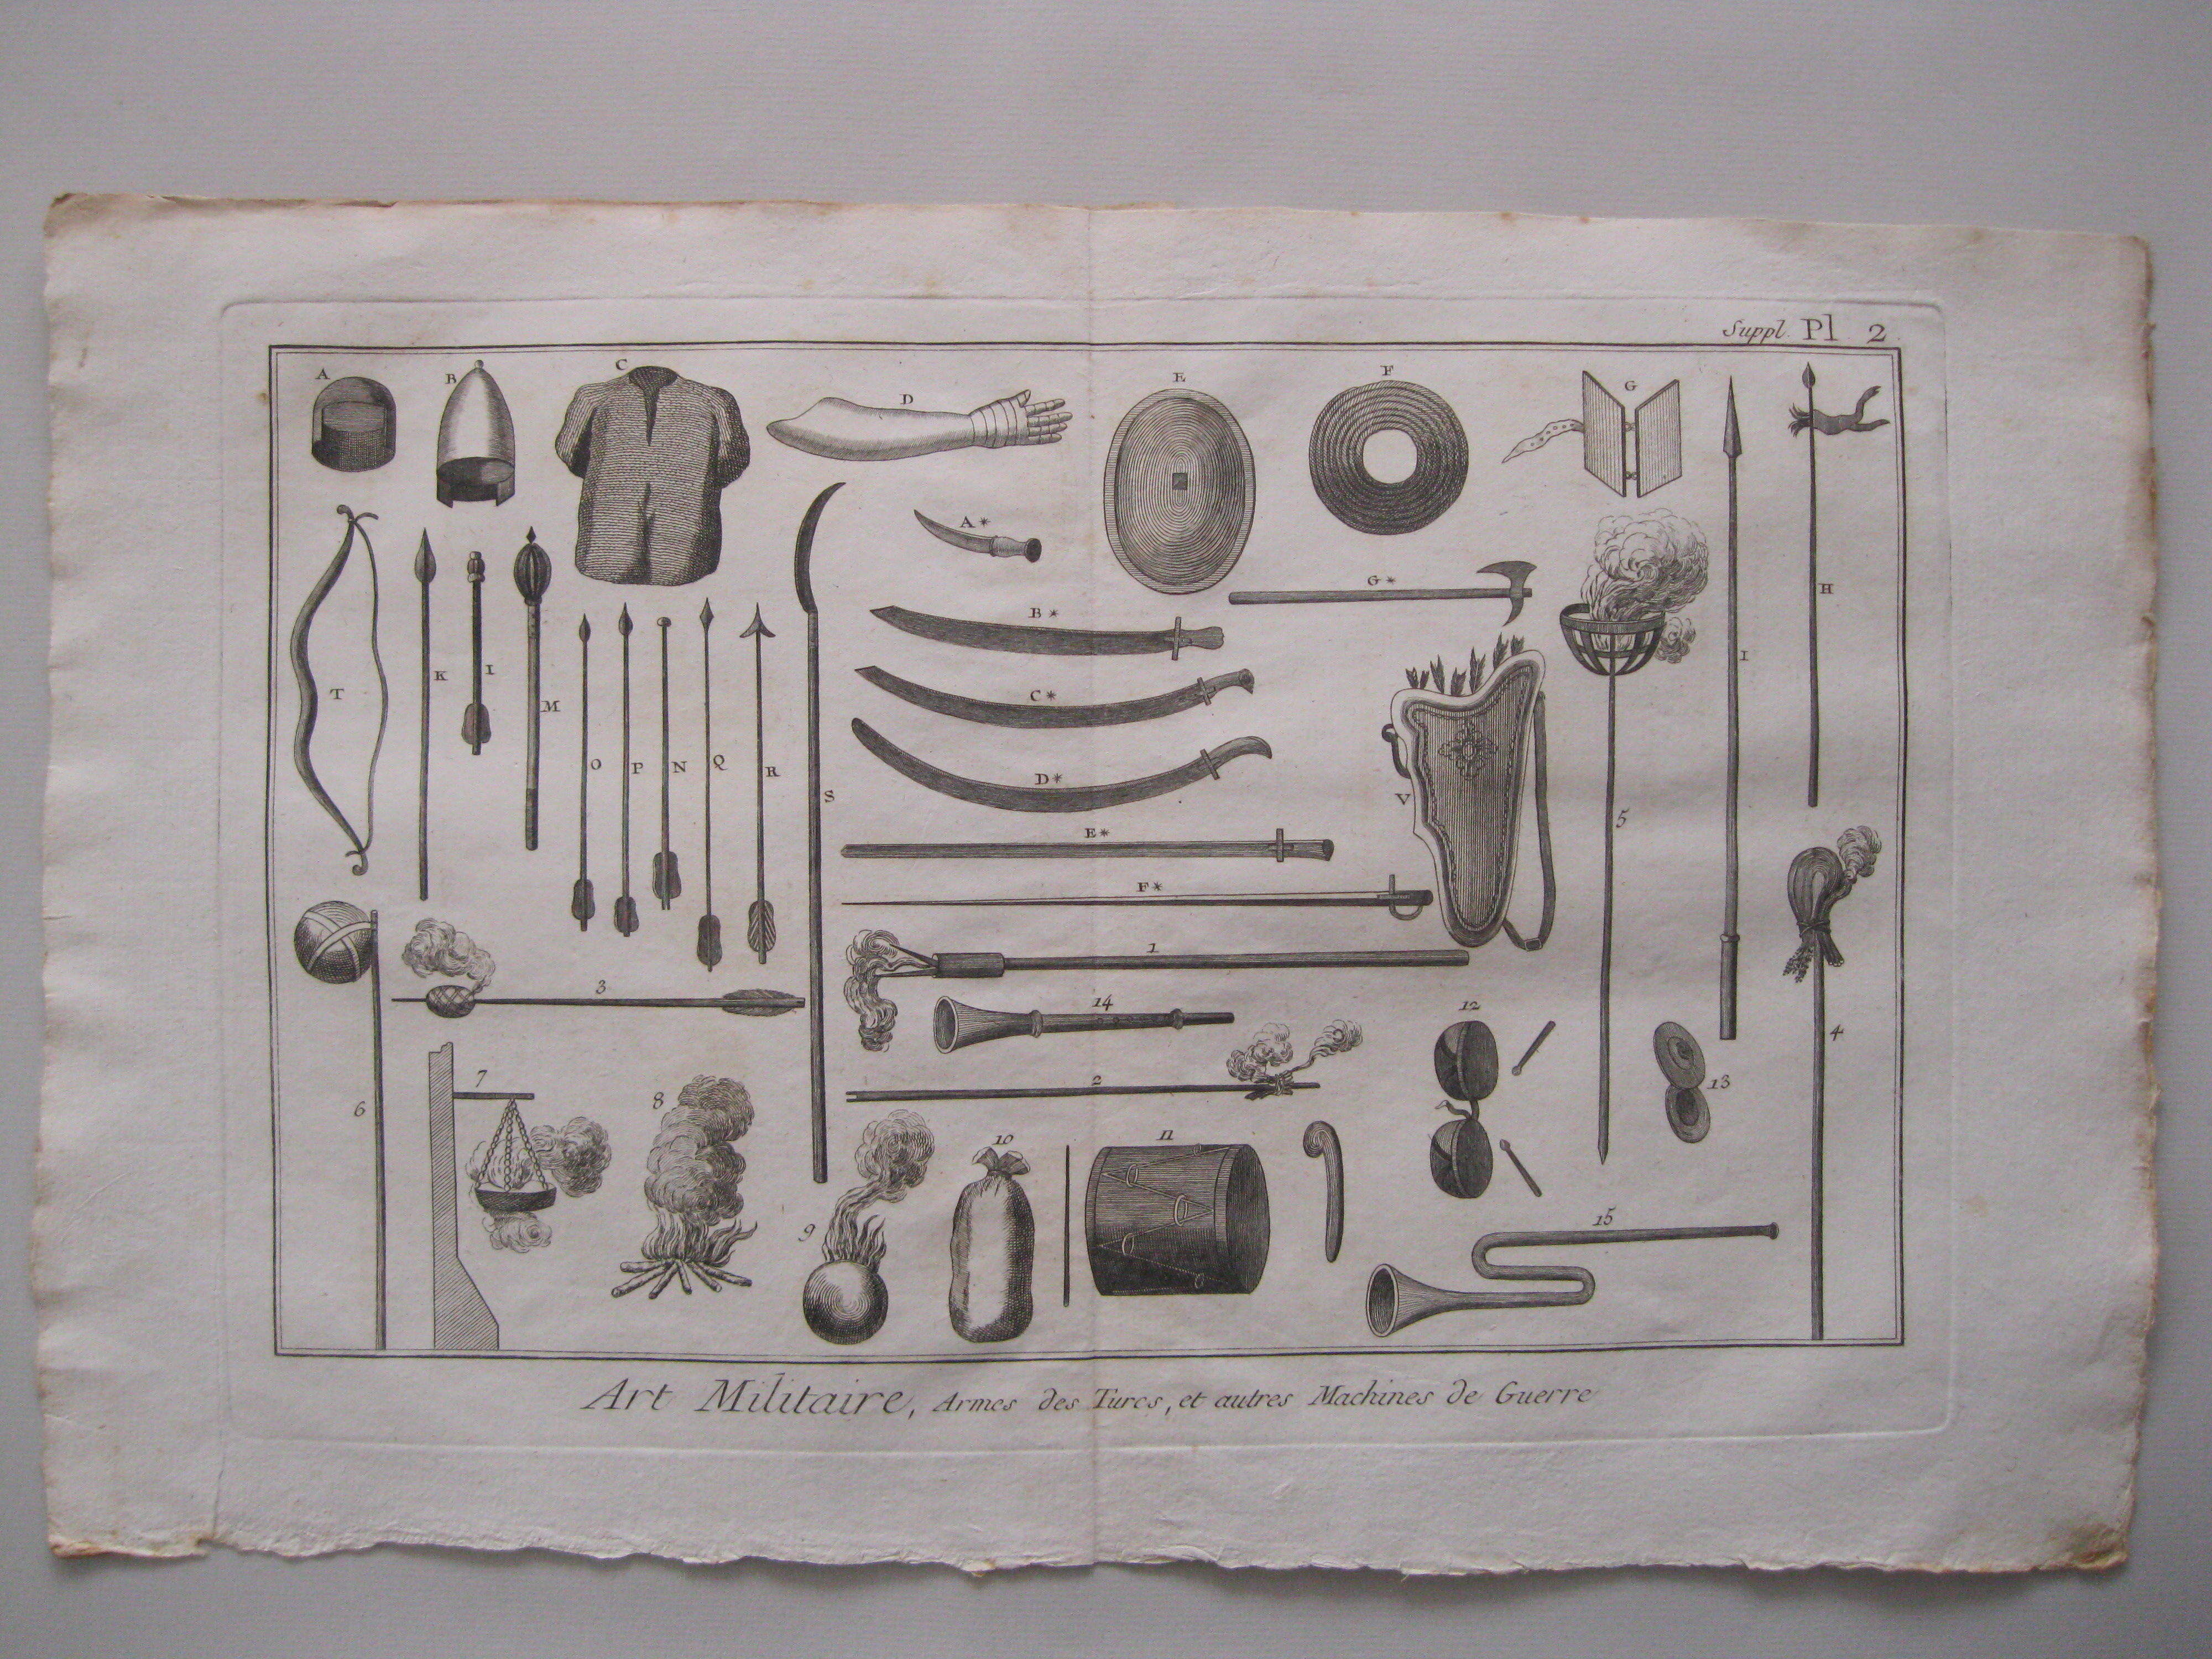 Arte militar, Armas de los turcos y otras maquinas de guerra.Diderot et D'Alembert, 1779